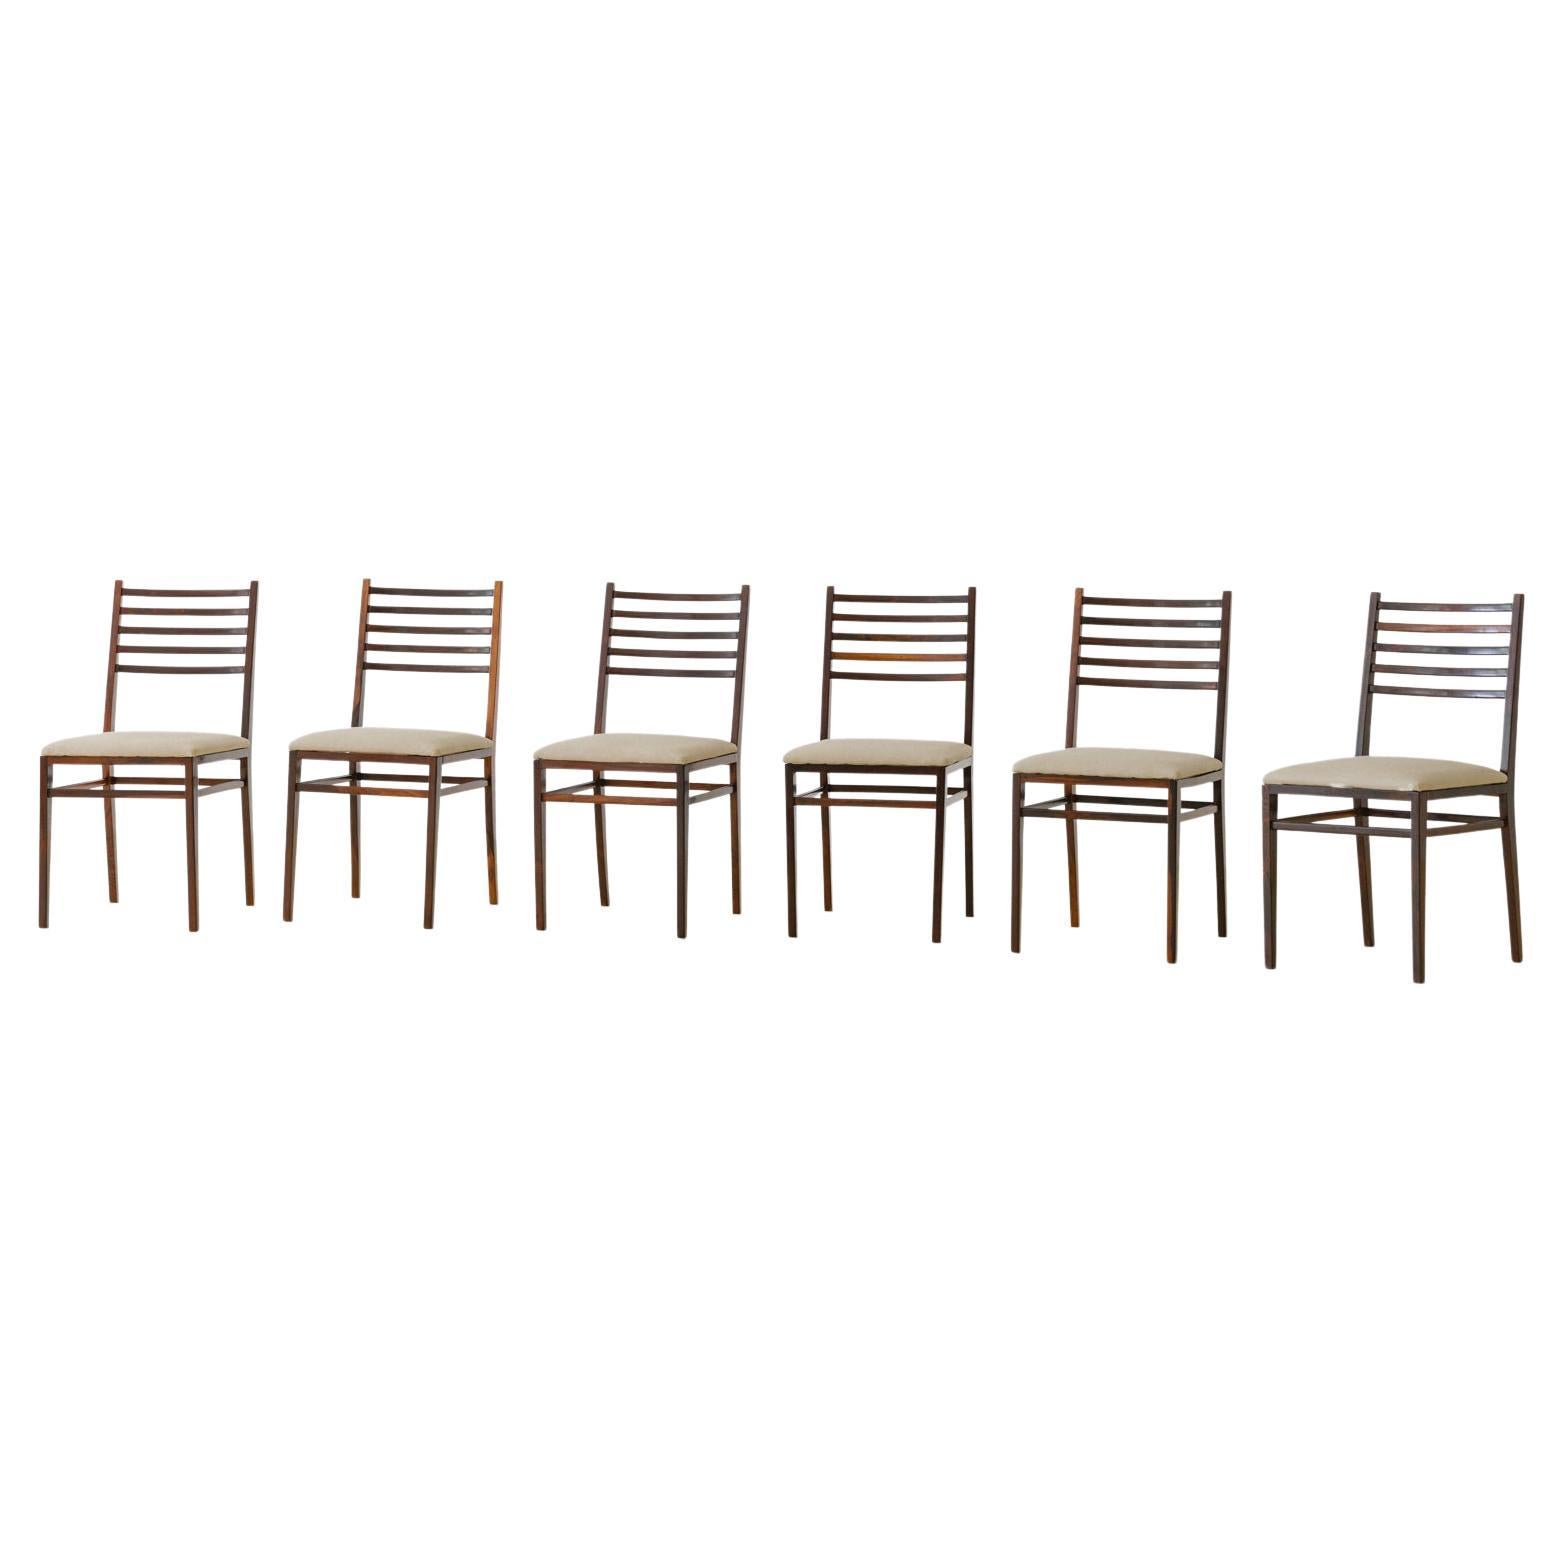 Satz von sechs Stühlen aus Palisanderholz, Modell 4015 von Geraldo de Barros, Unilabor, 1950er Jahre